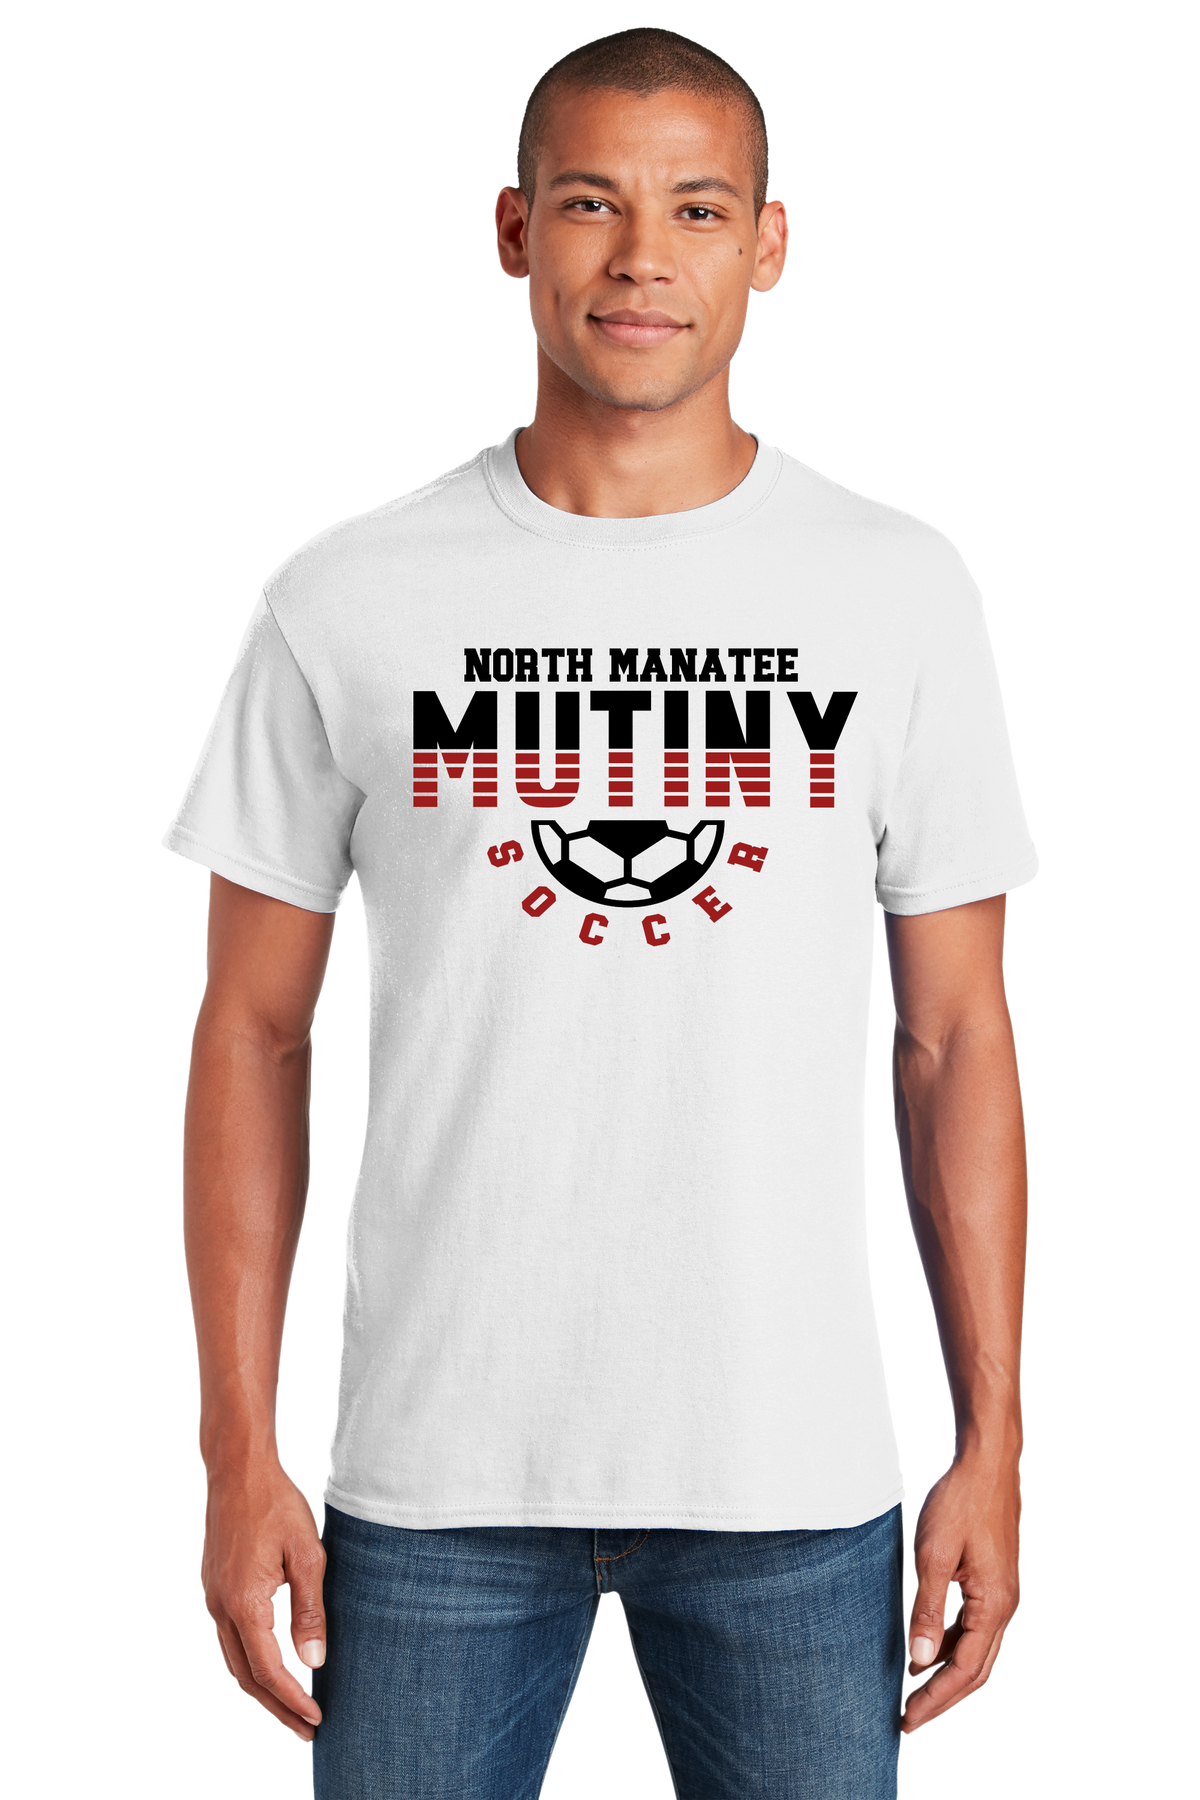 Mutiny Soccer Spliced Shirt